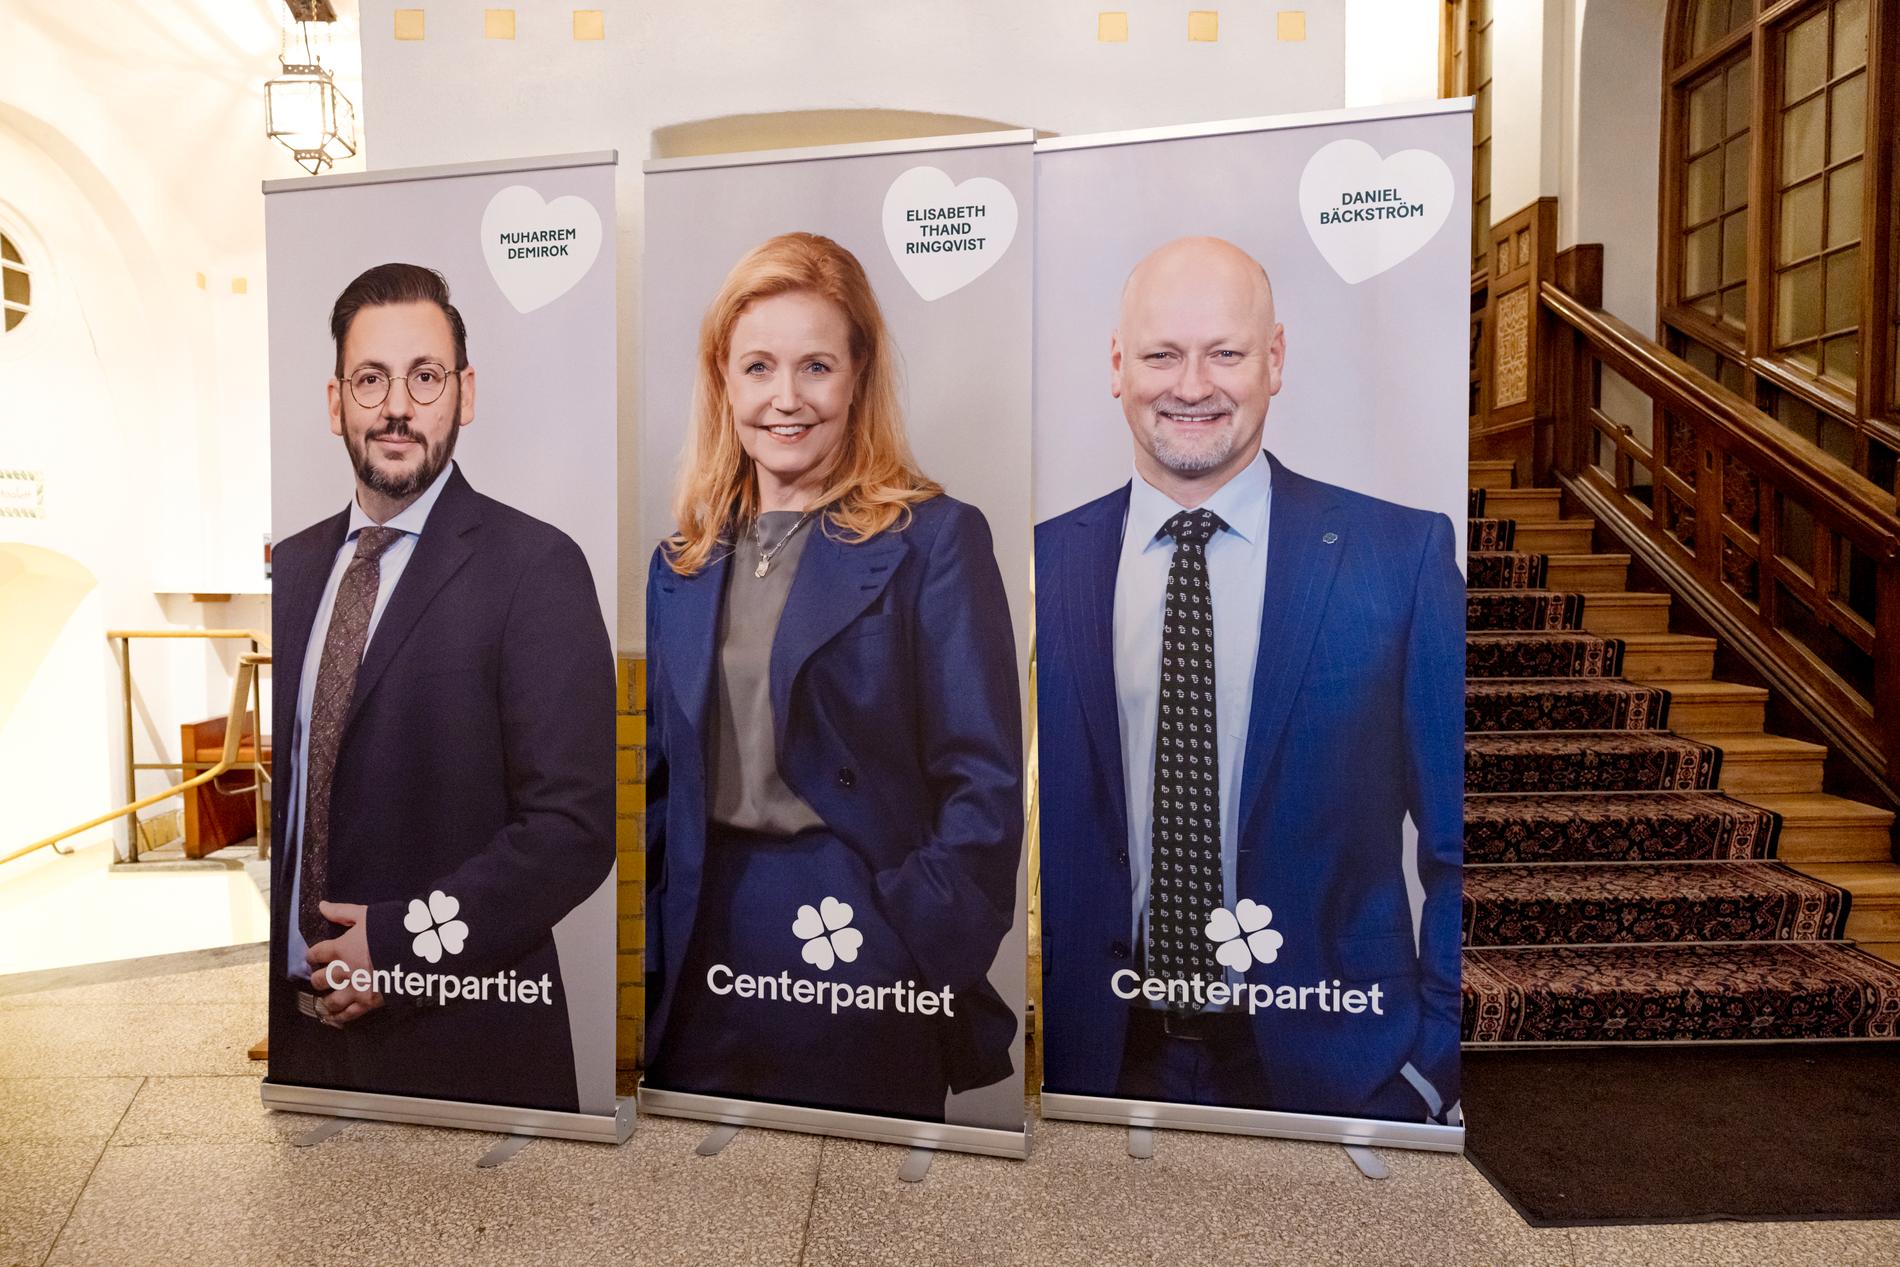 Centerpartiets partiledarturné med kandidaterna Muharrem Demirok, Elisabeth Thand Ringqvist och Daniel Bäckström.